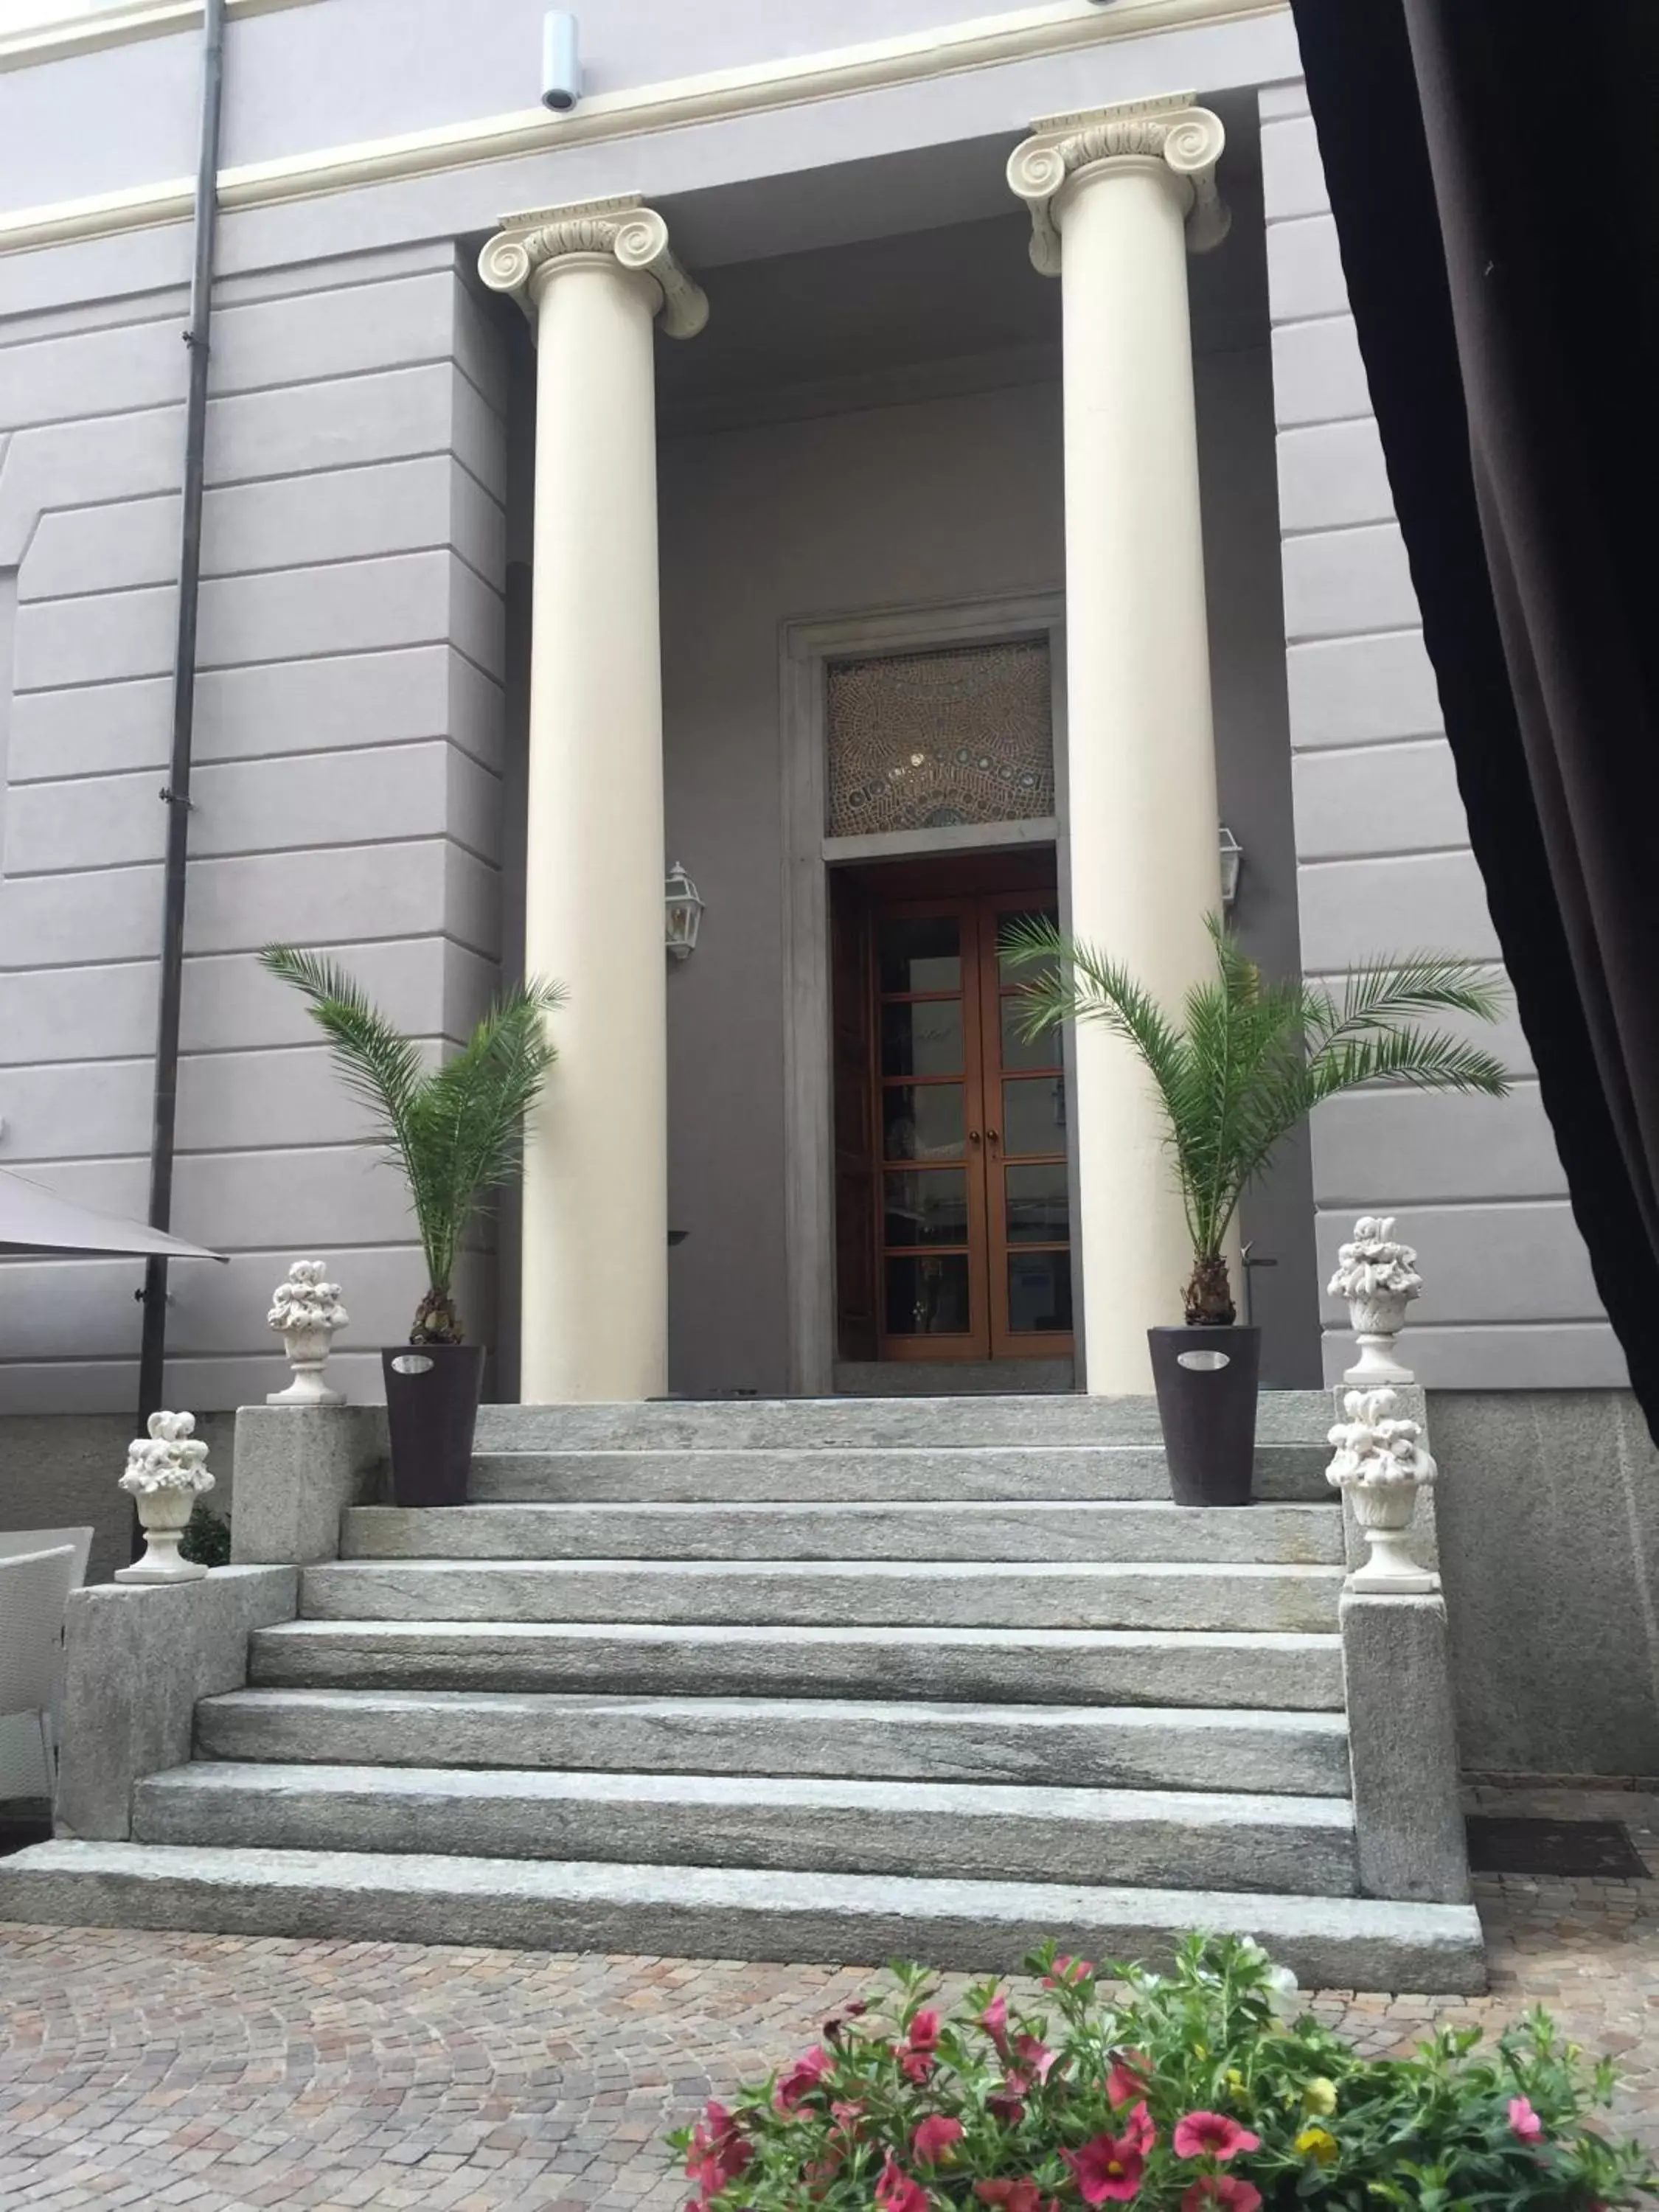 Facade/entrance in Hotel Europa Varese